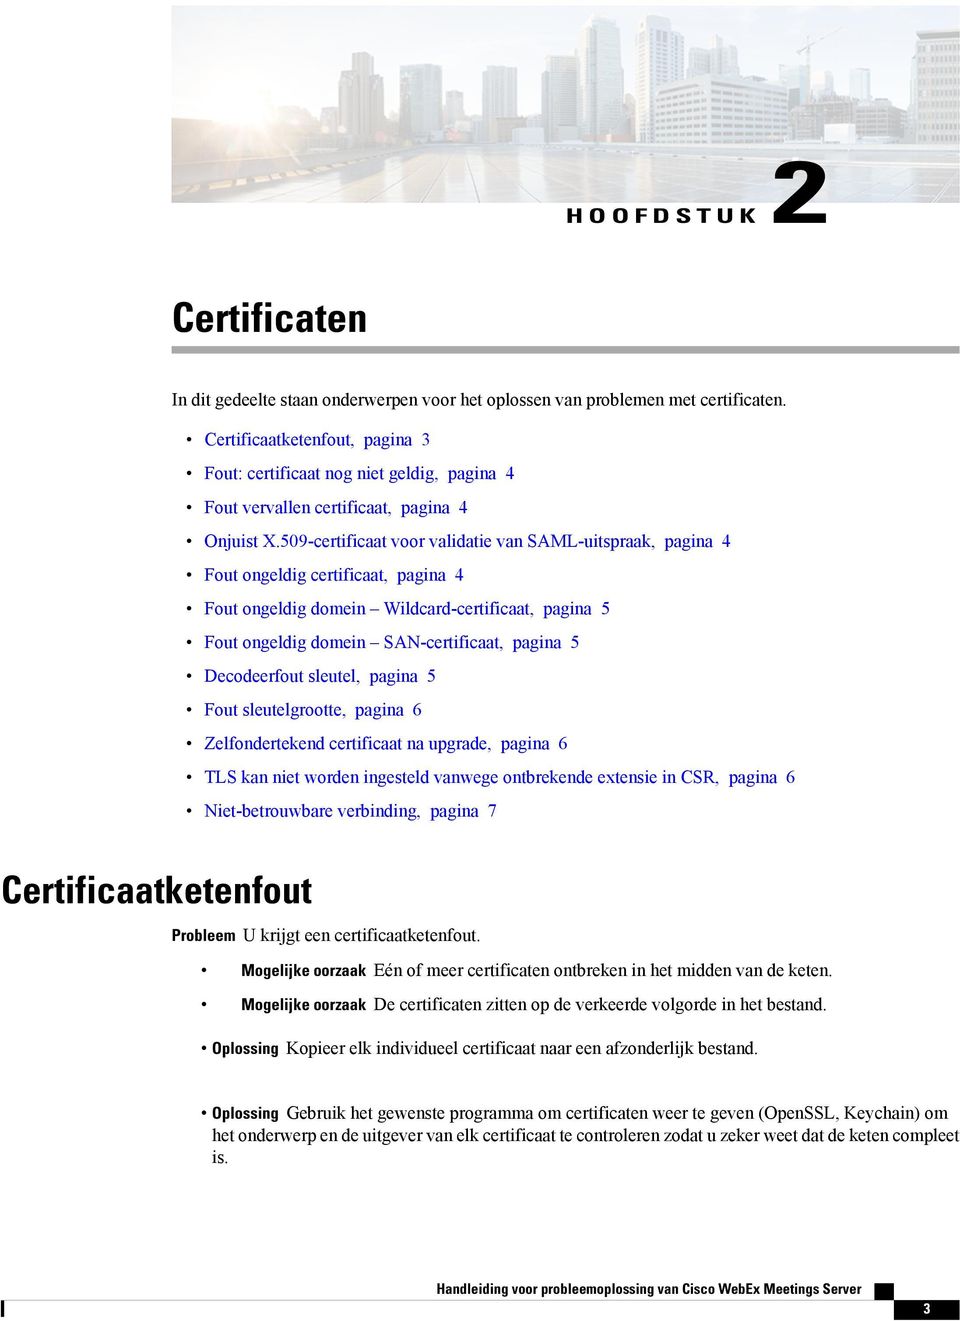 509-certificaat voor validatie van SAML-uitspraak, pagina 4 Fout ongeldig certificaat, pagina 4 Fout ongeldig domein Wildcard-certificaat, pagina 5 Fout ongeldig domein SAN-certificaat, pagina 5